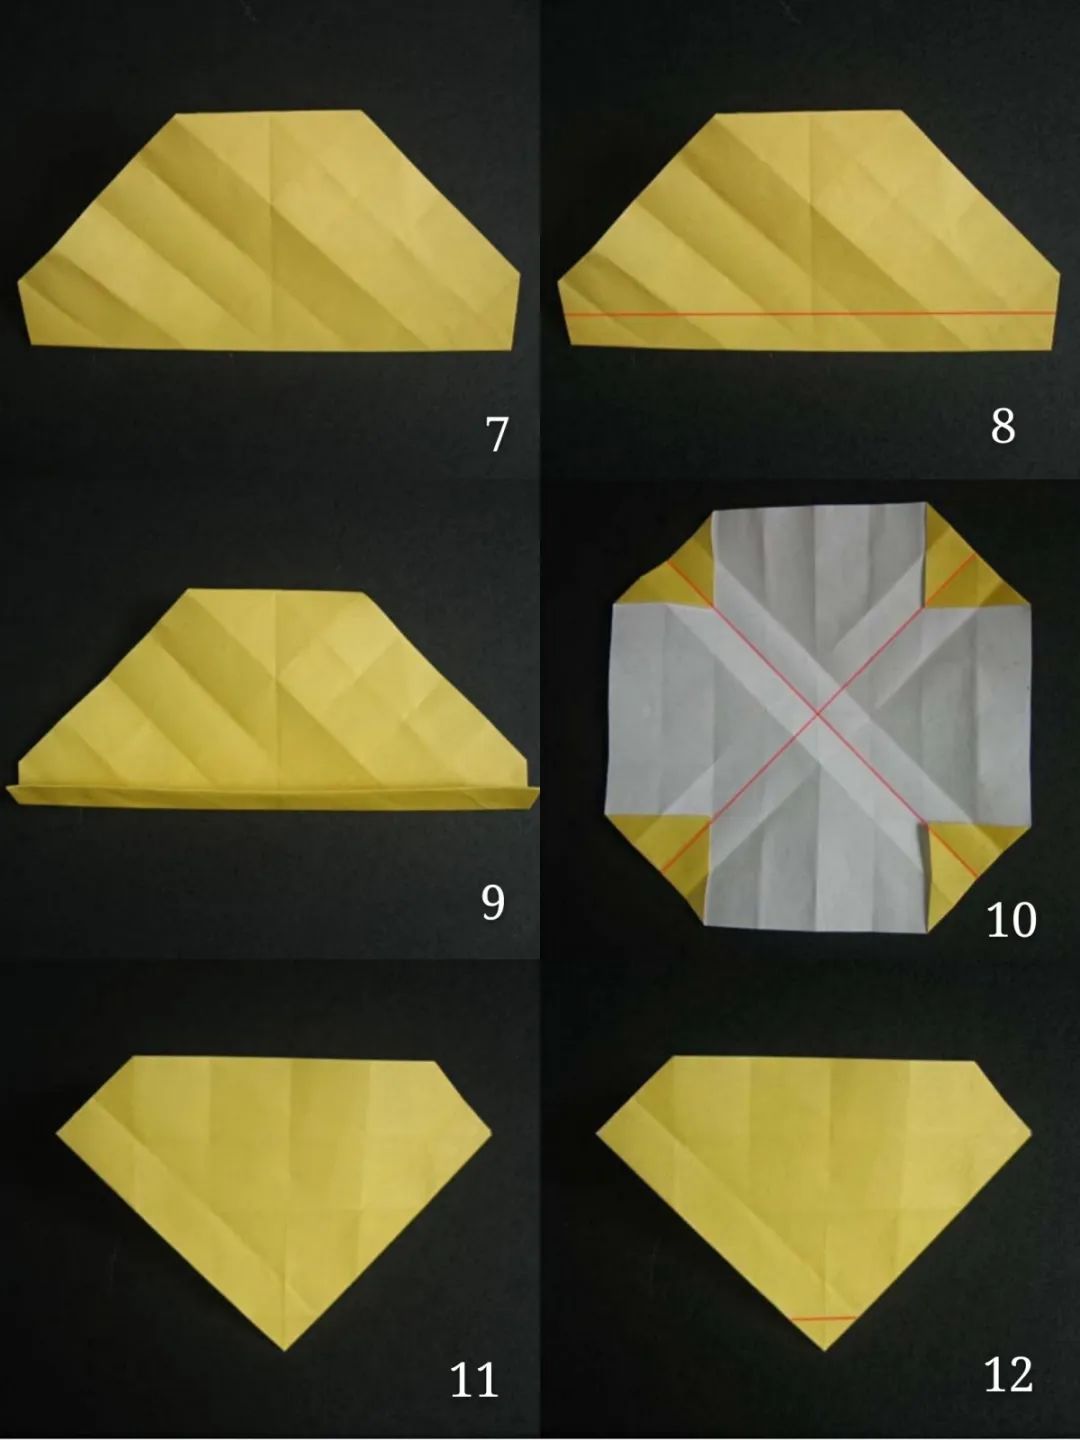 纸上横向,纵向留下七道折;取一张正方形的纸(以下为川崎玫瑰折纸步骤)